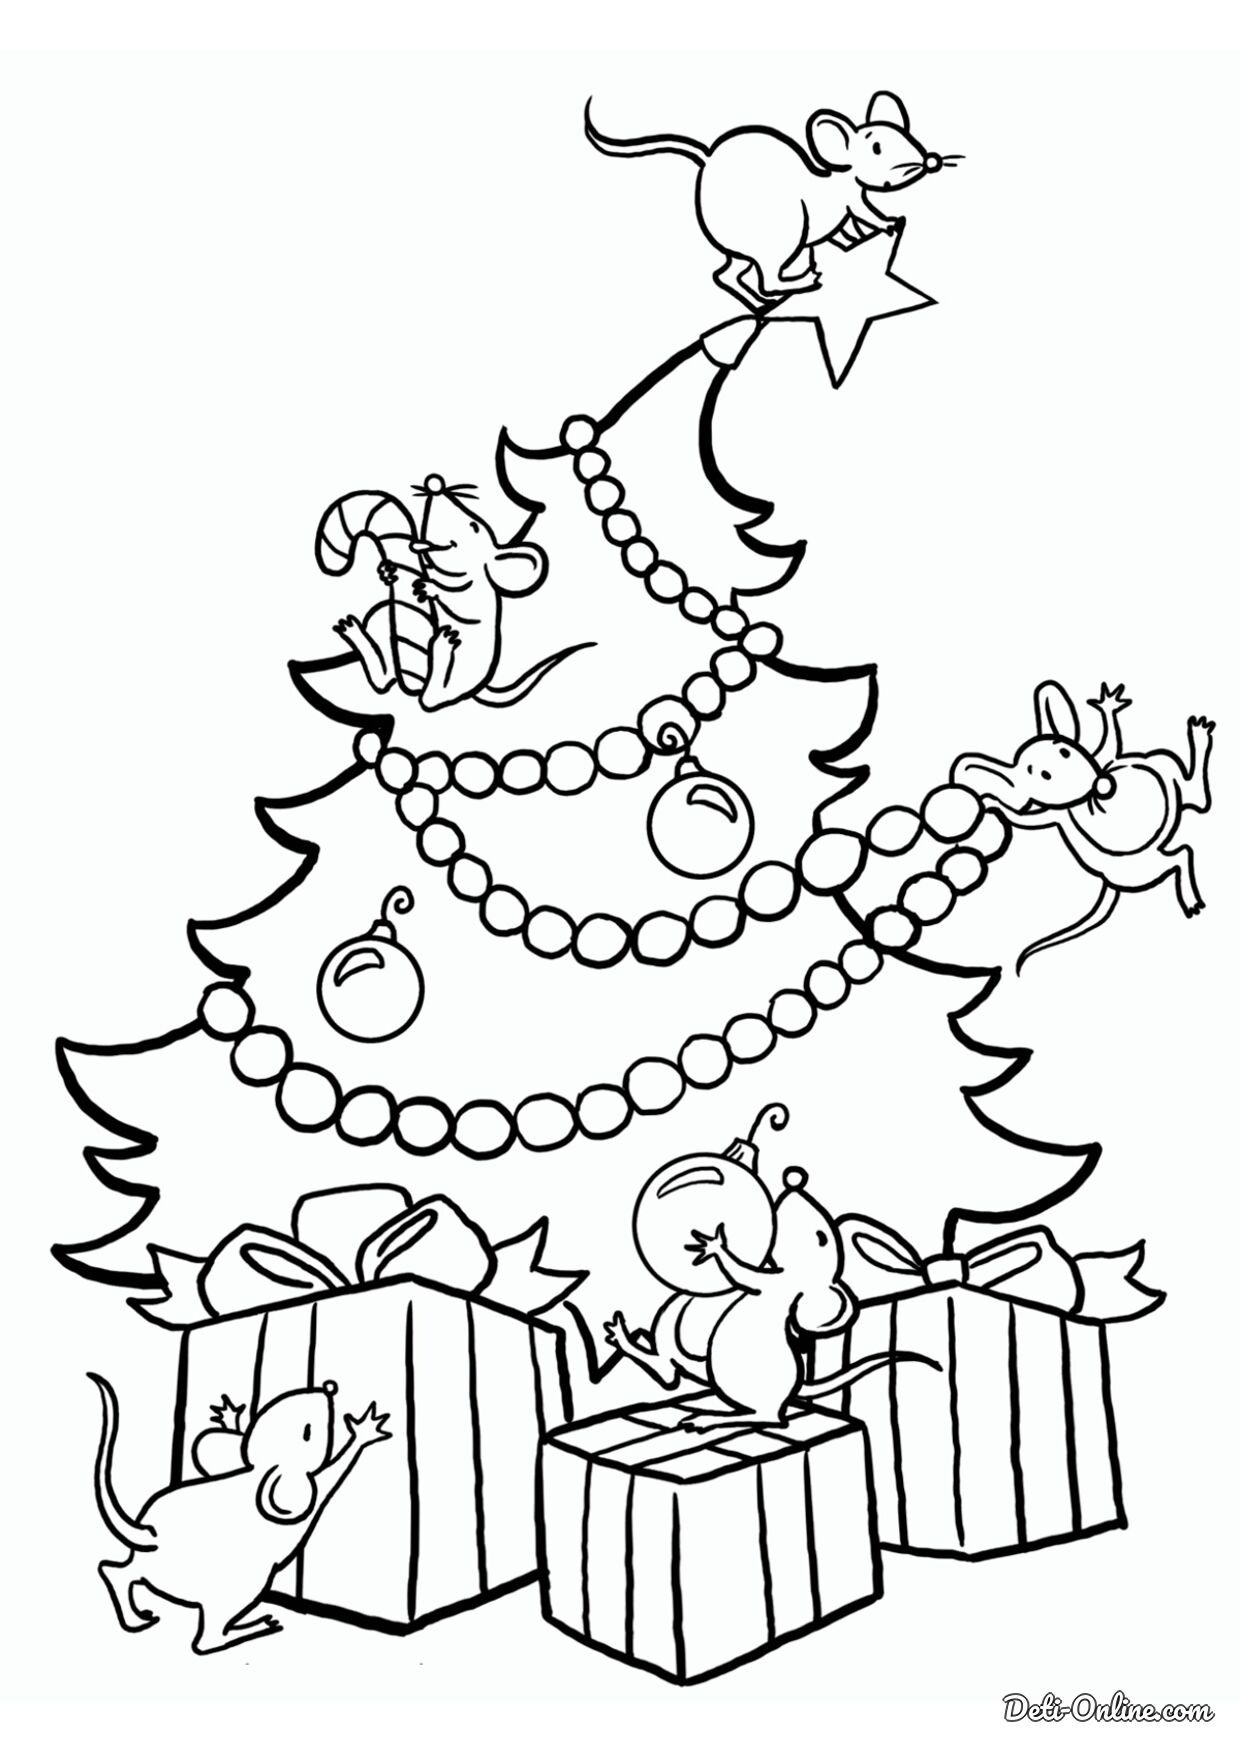 новогодняя елка картинка для детей раскраска 3